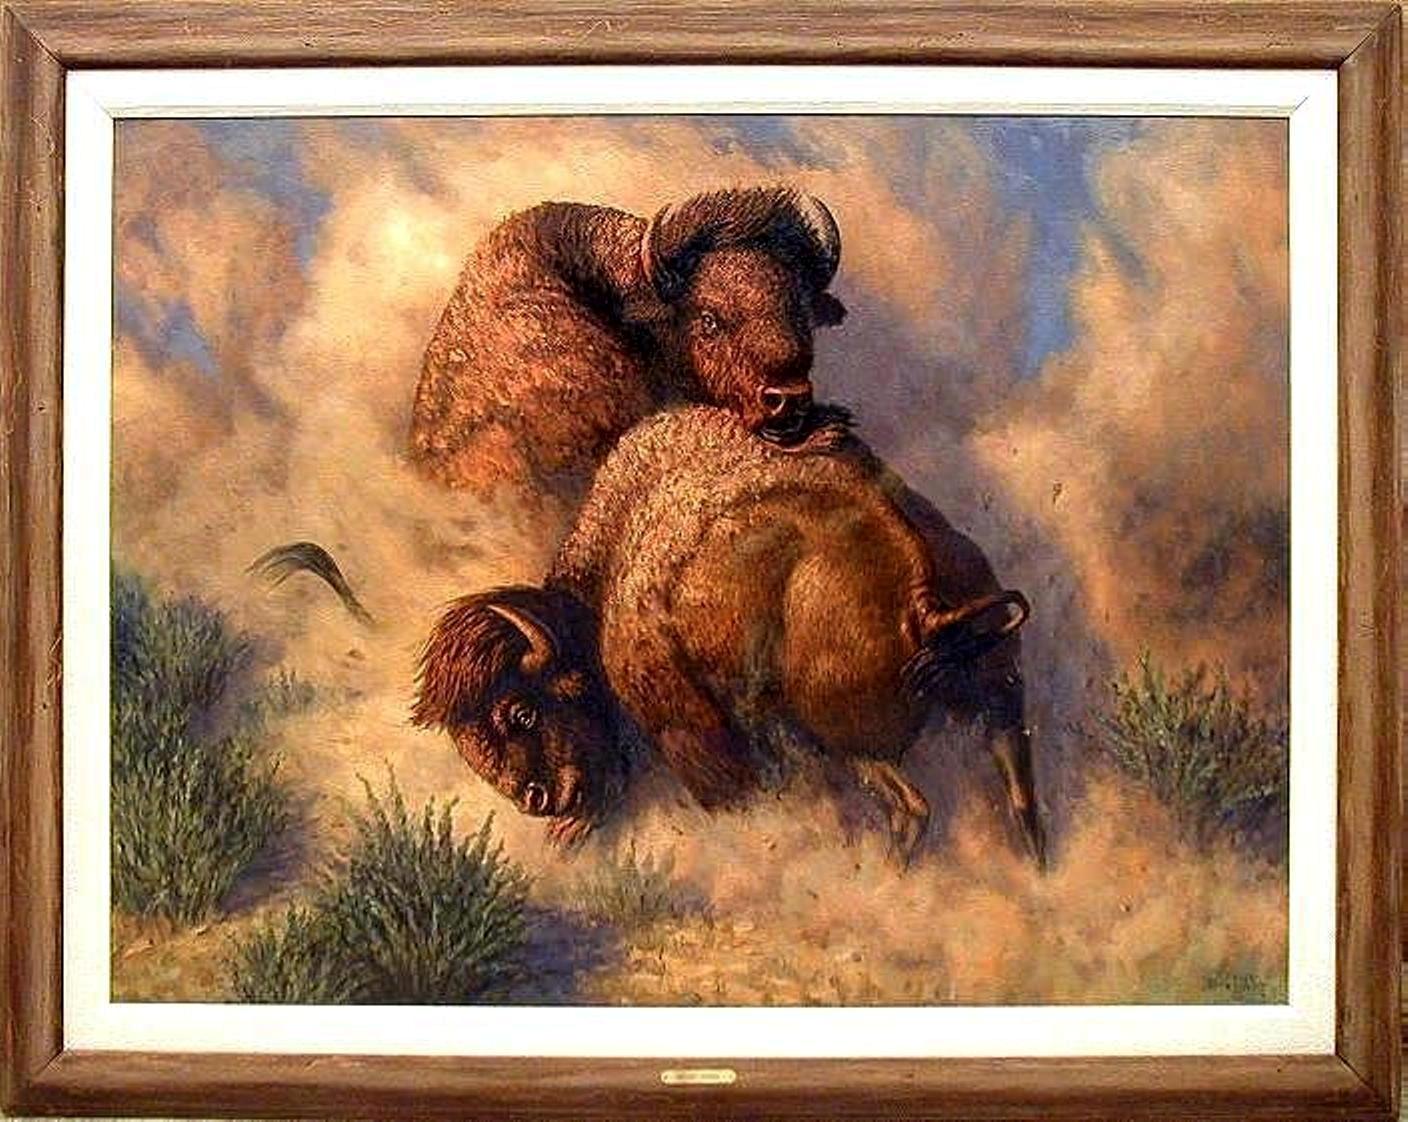 Desert Storm, oil painting